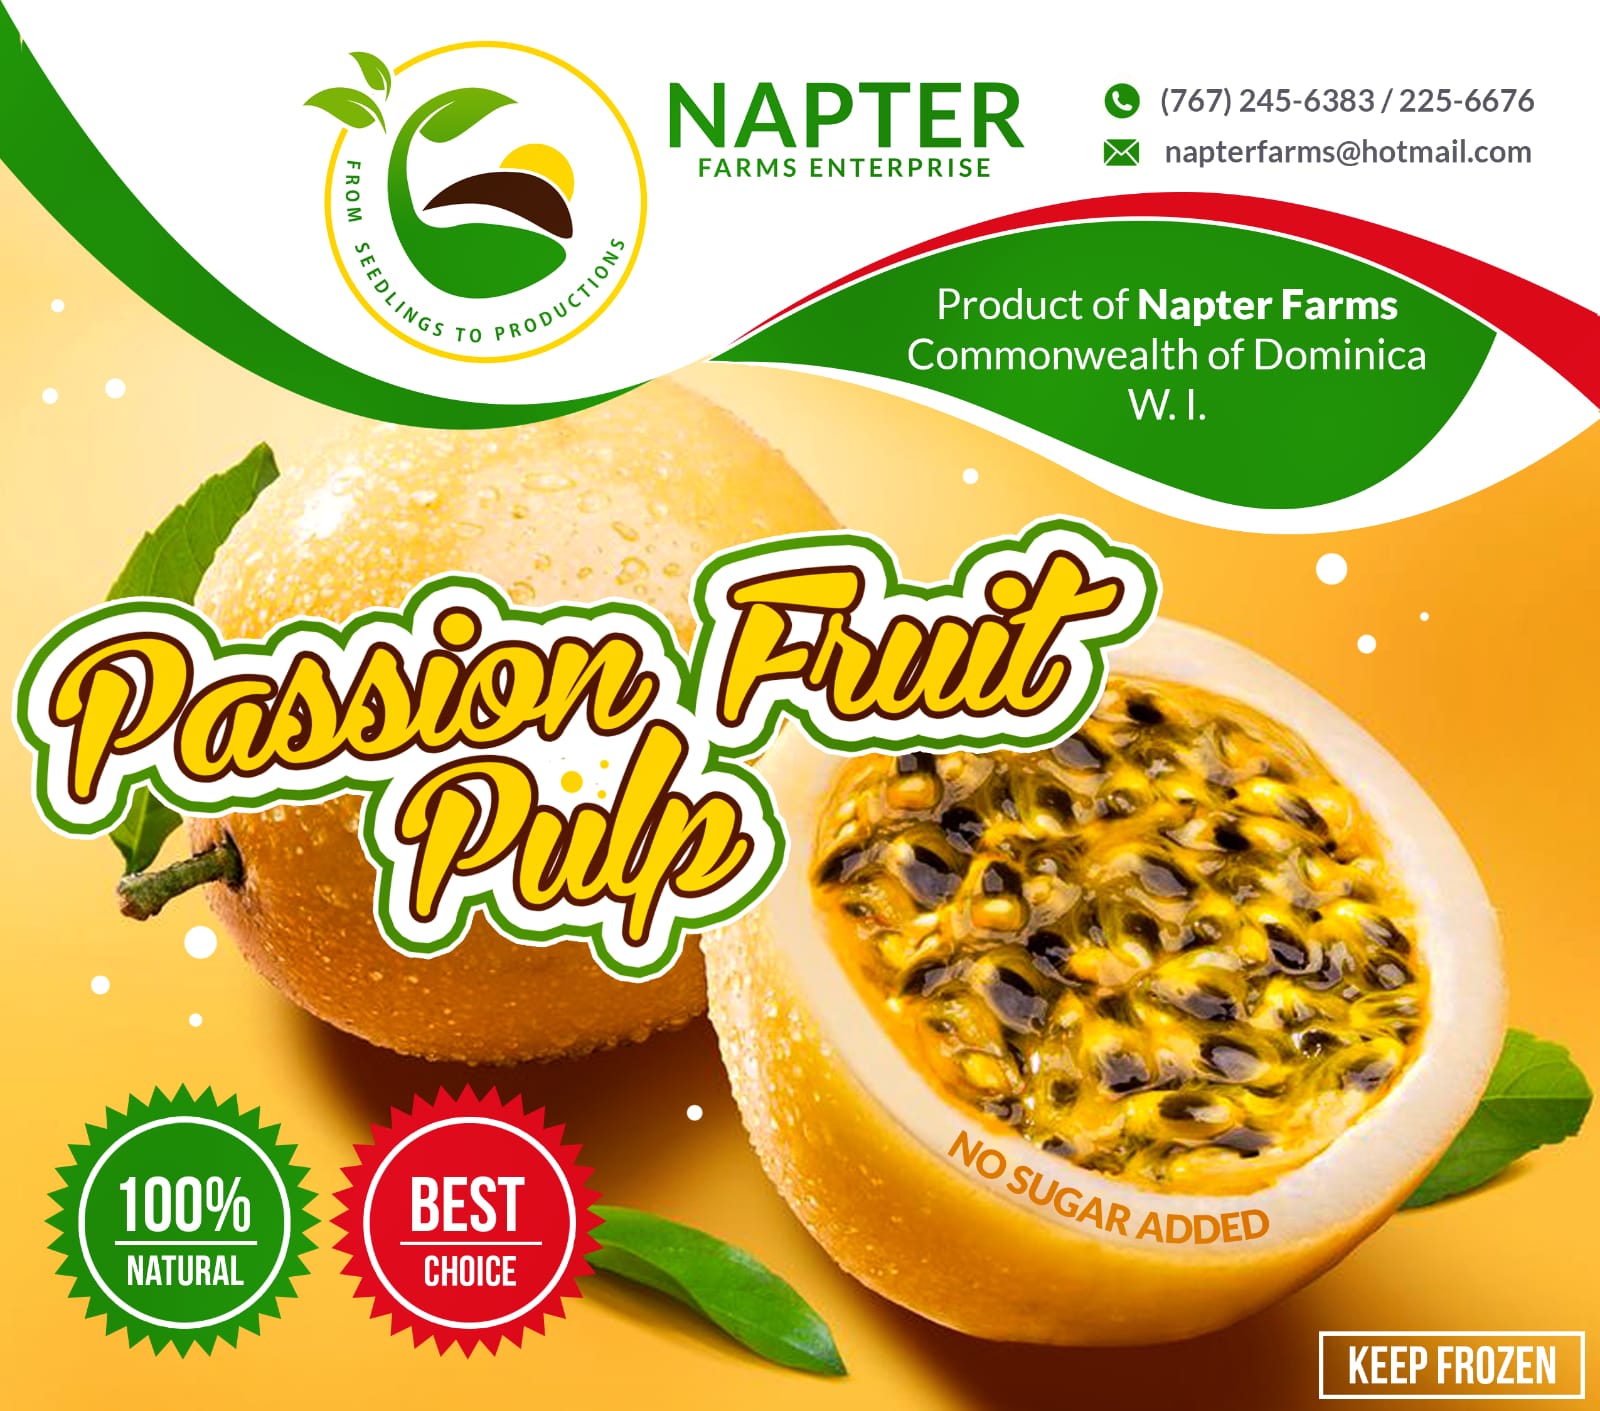 Napter Farms Enterprise